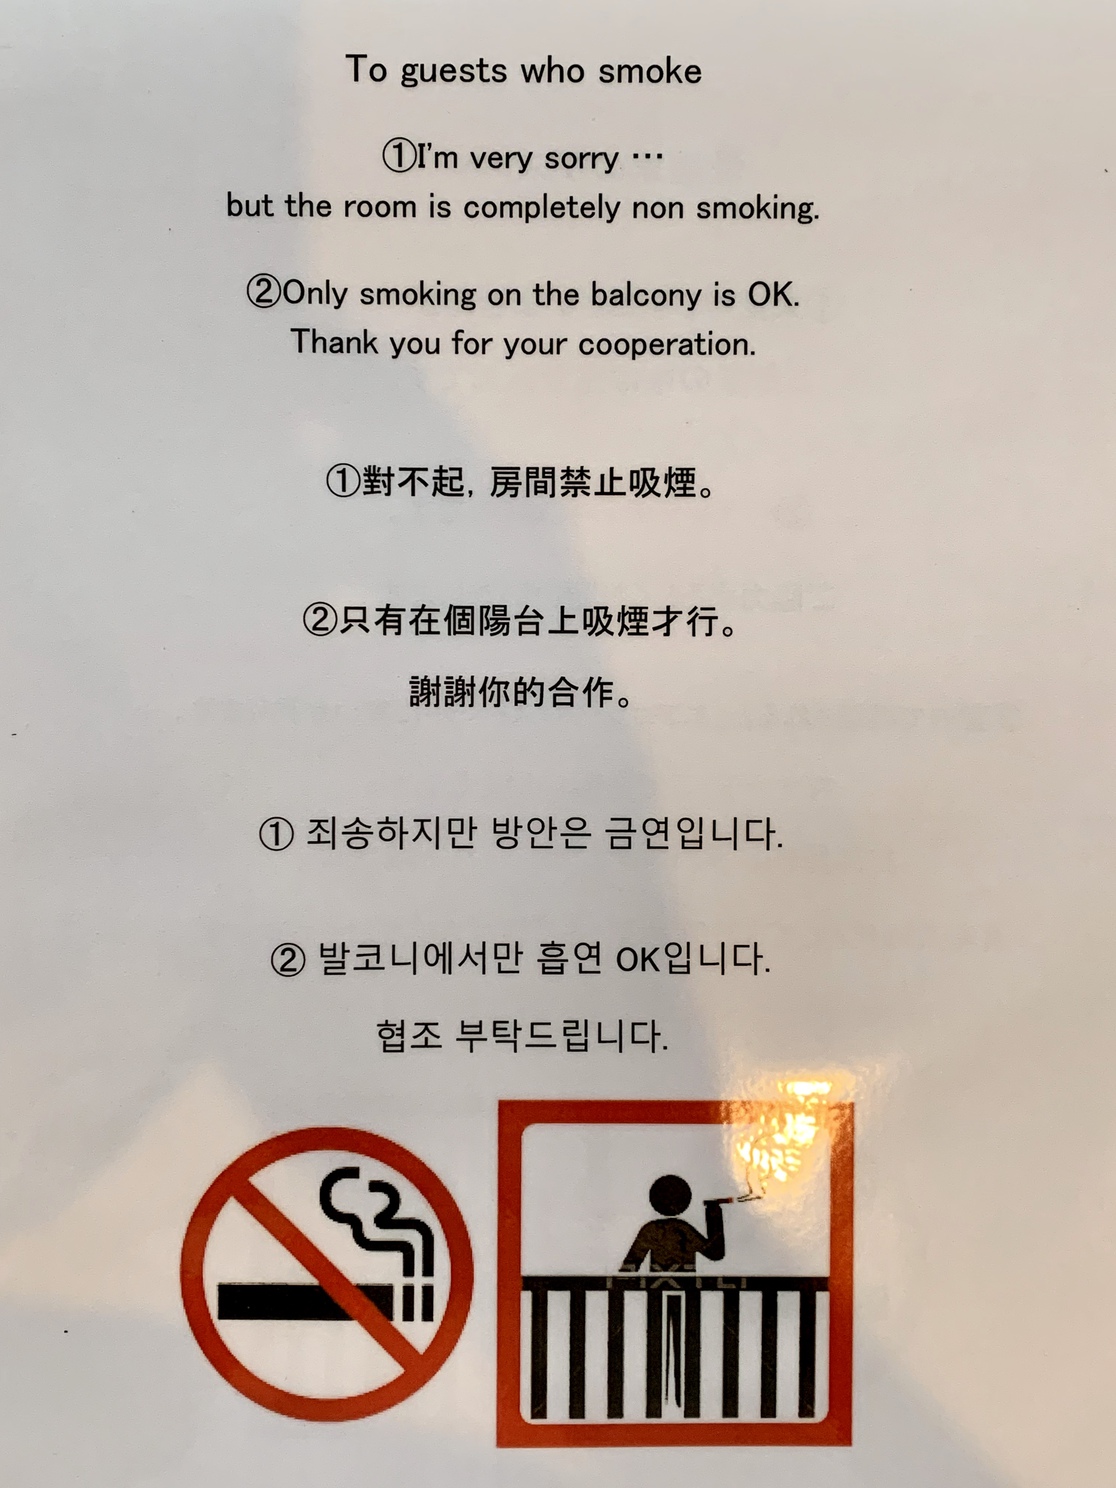 お部屋は完全禁煙、ベランダのみ喫煙OK。英語